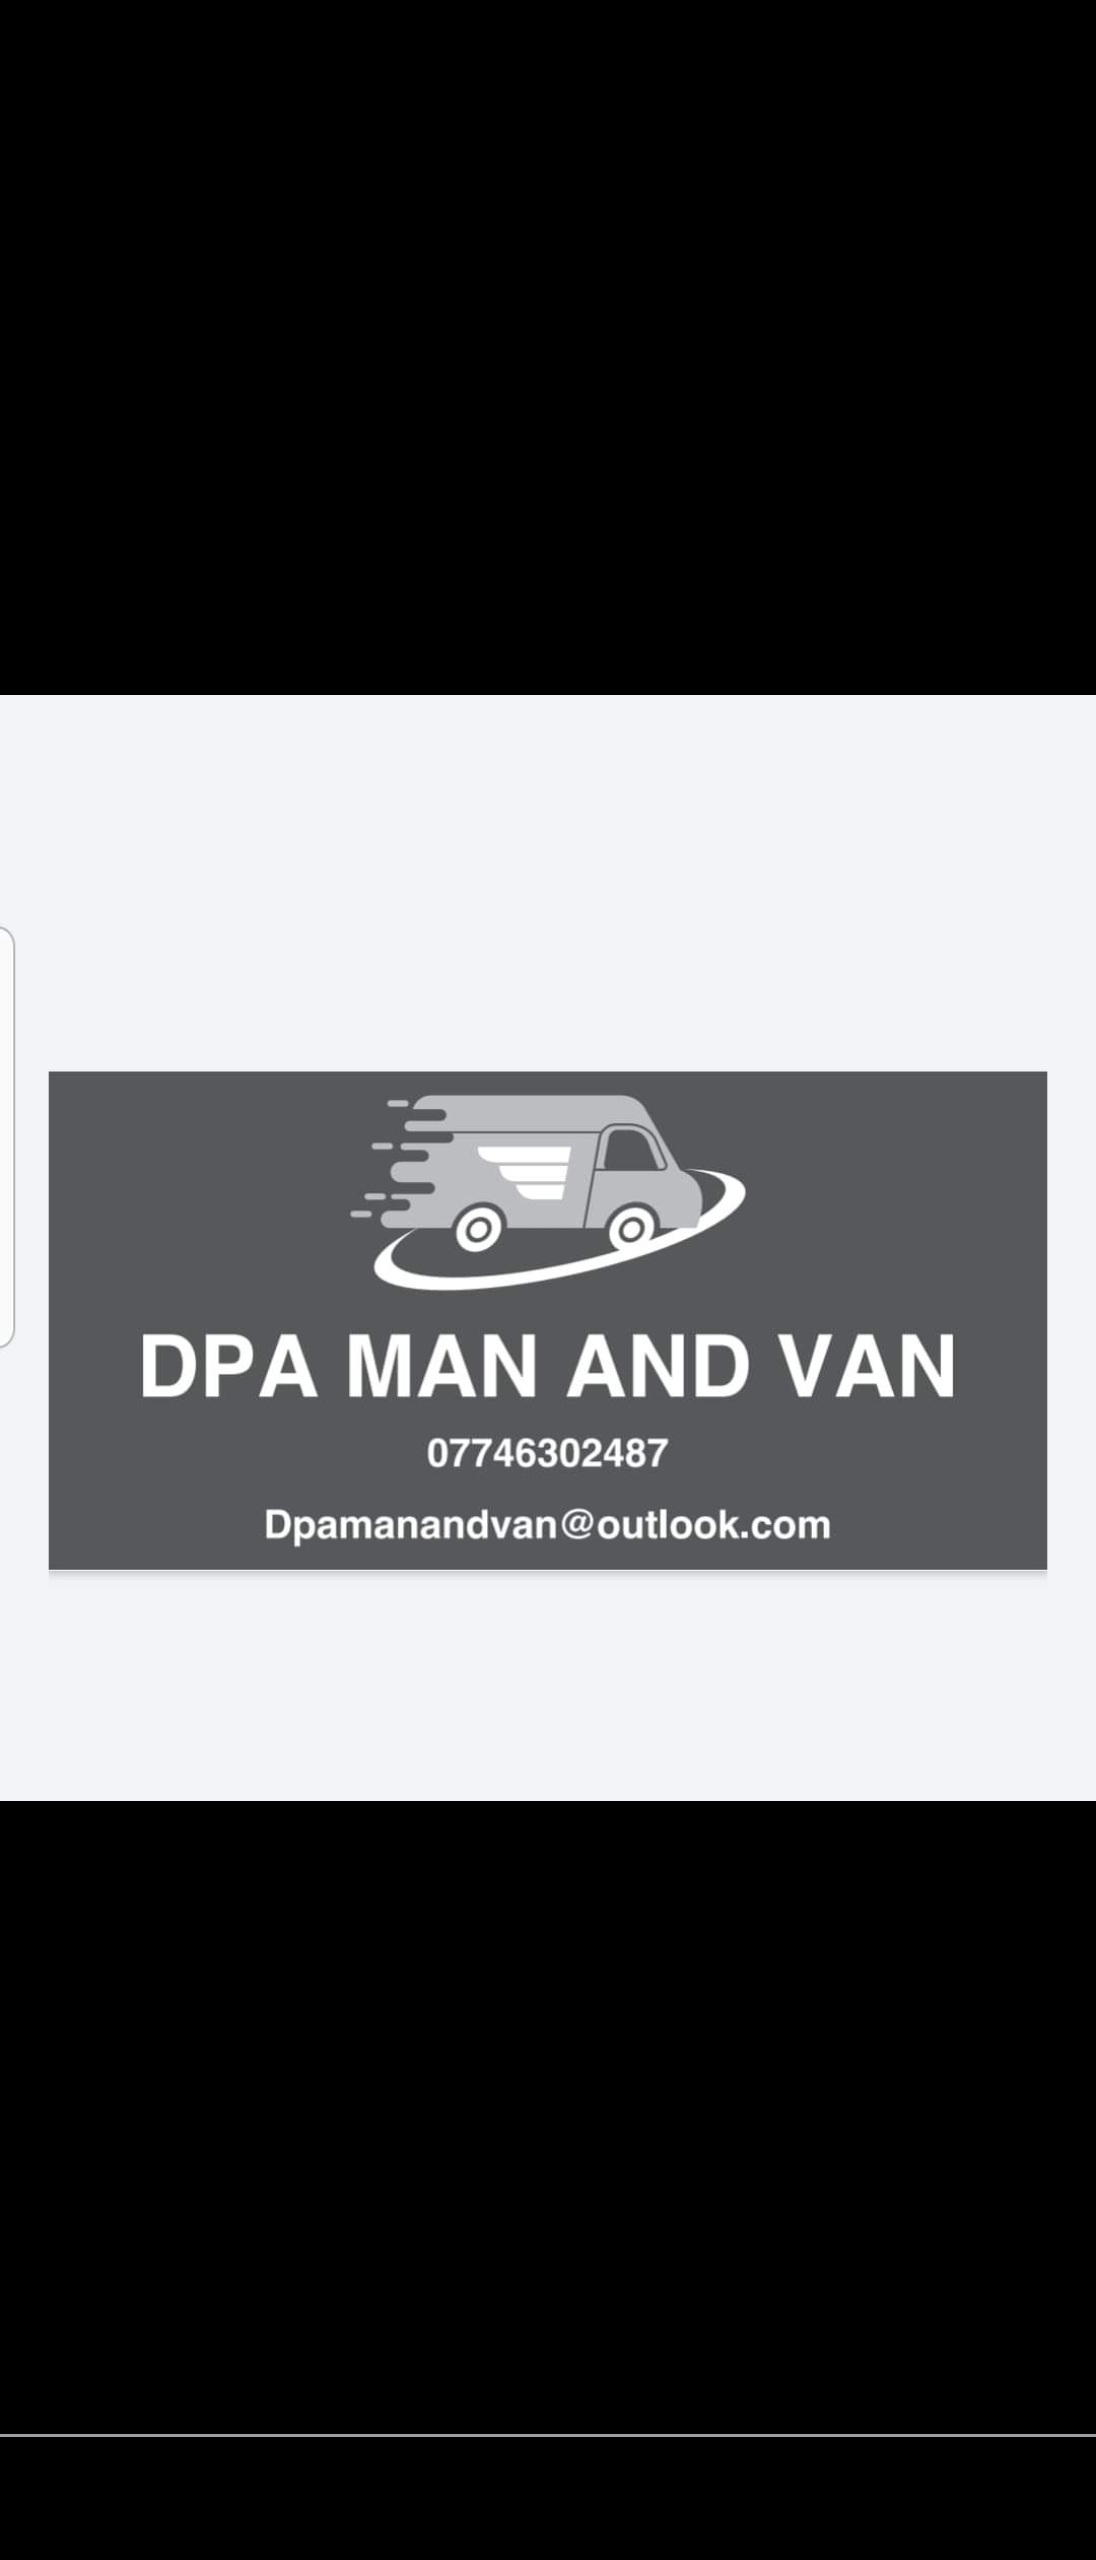 Dpa man and Van logo